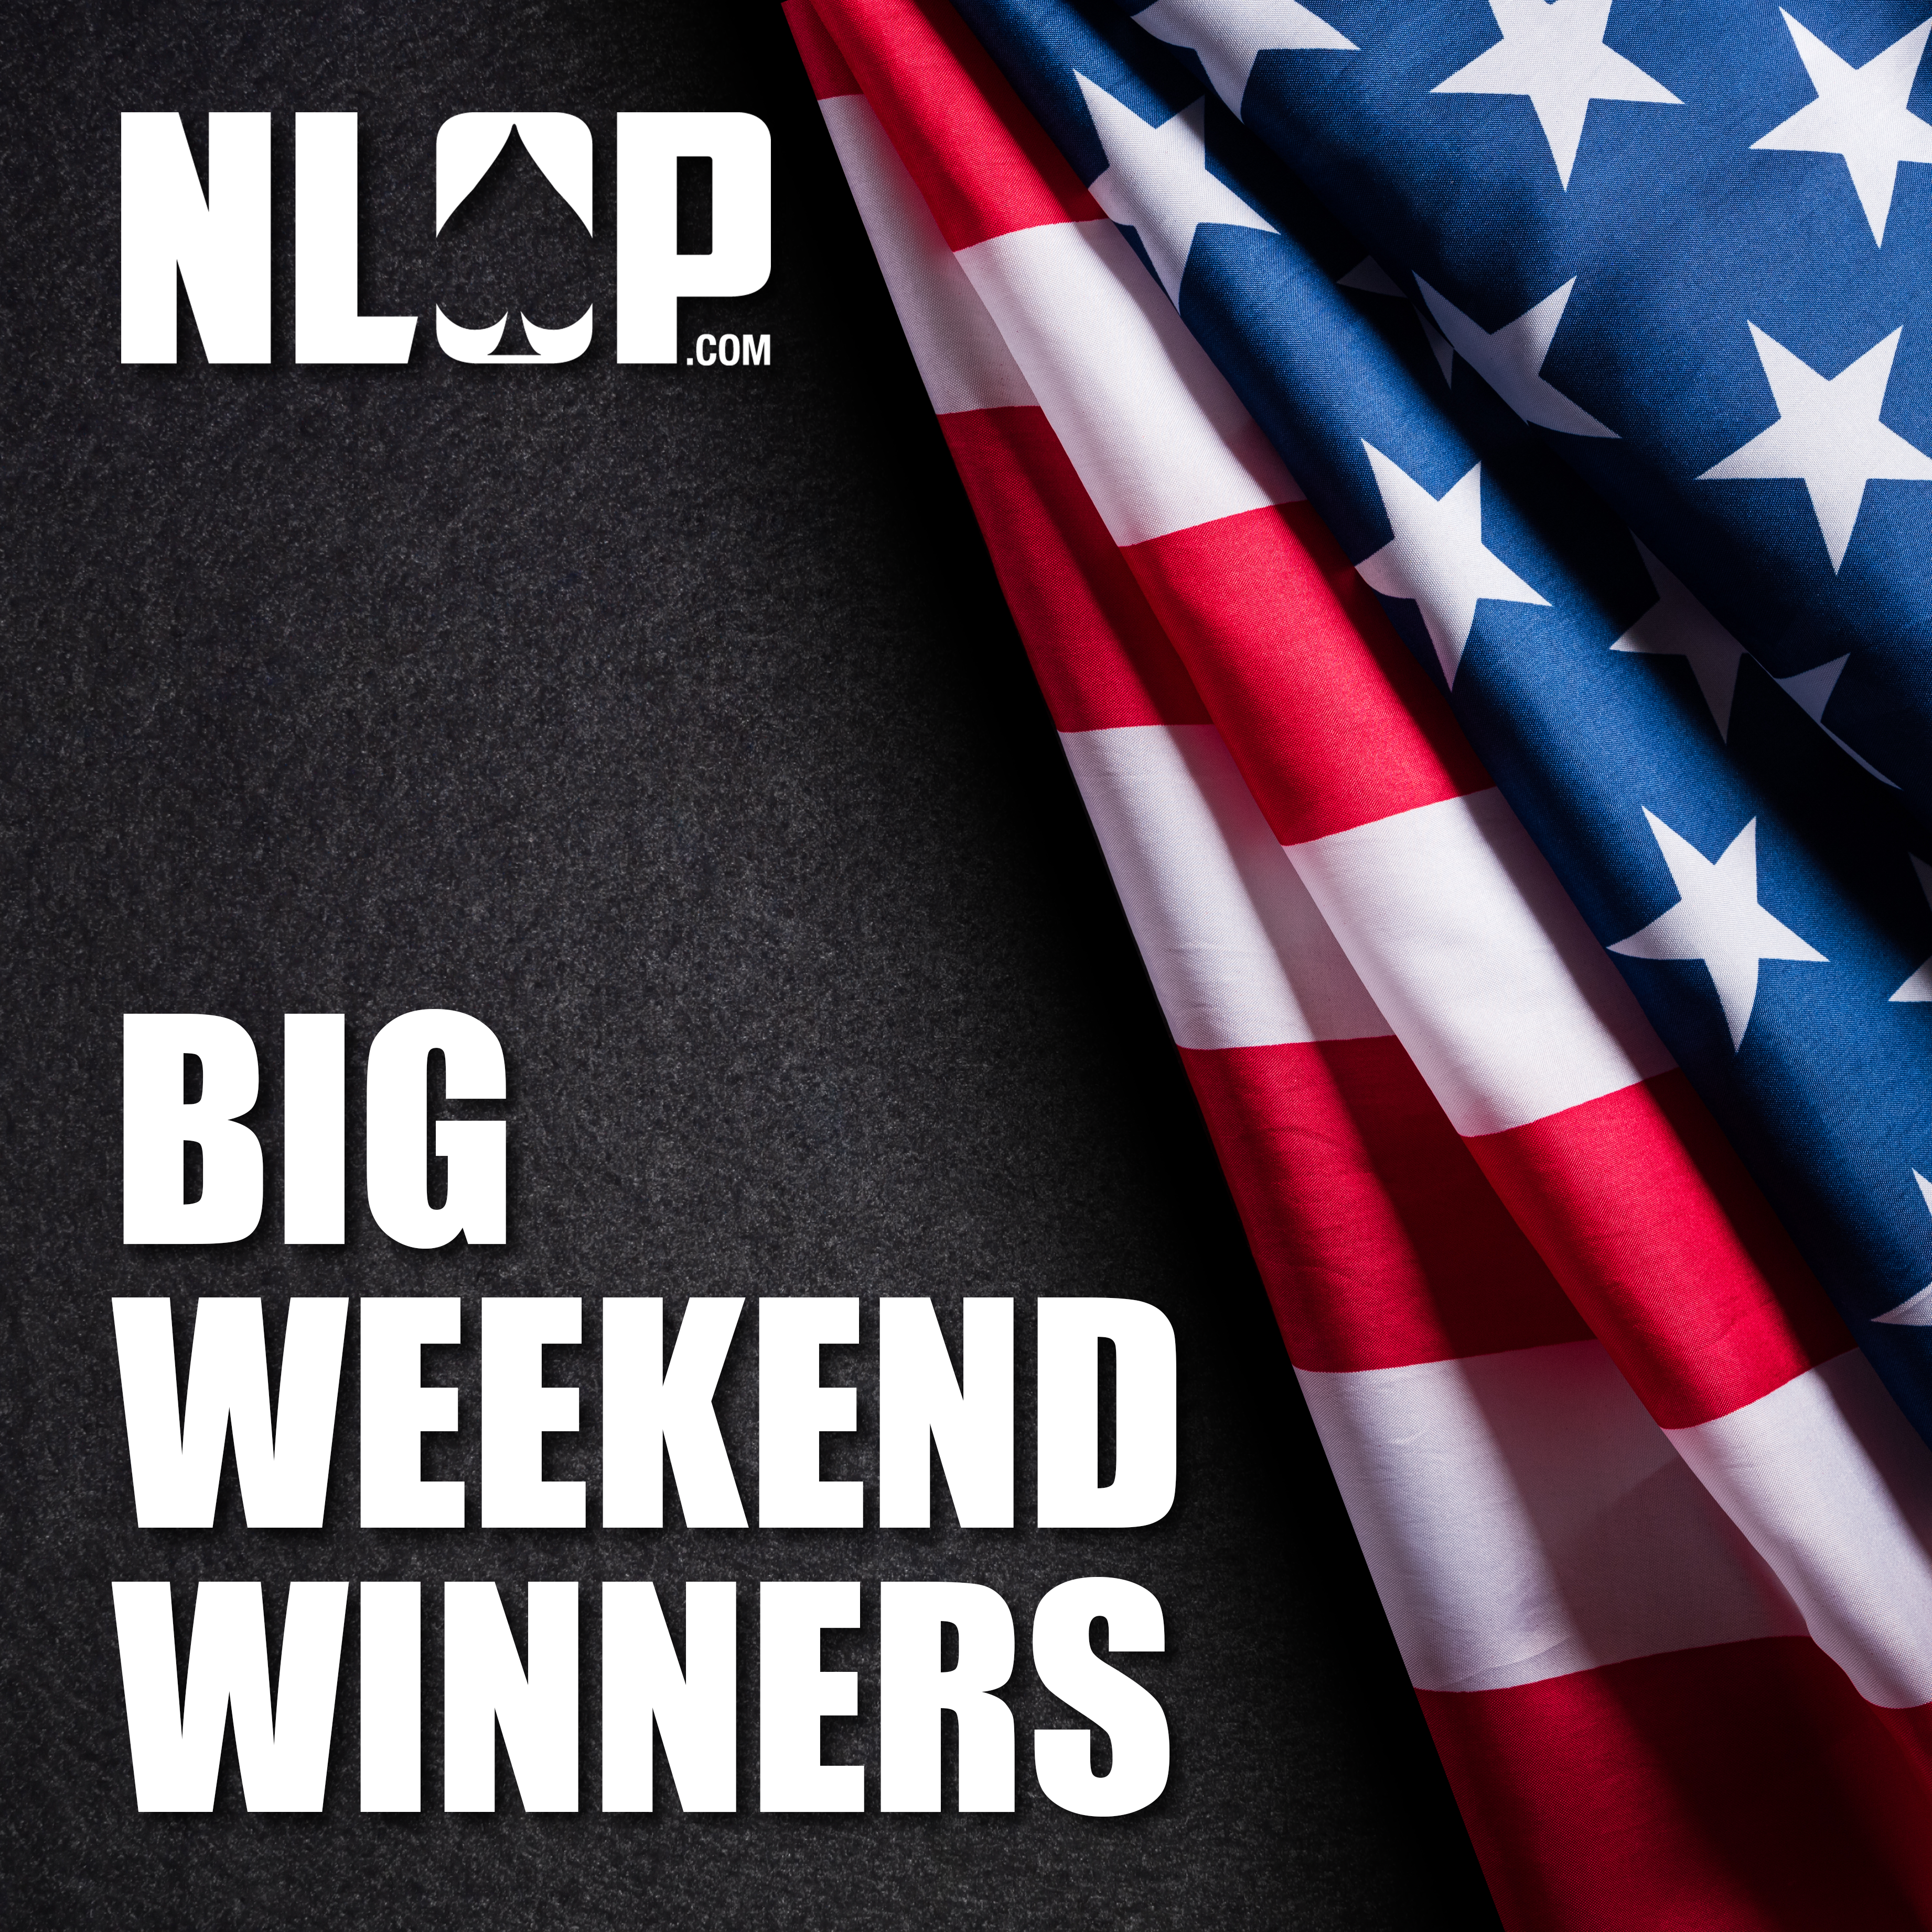 Real Online Poker - Big Weekend Winners